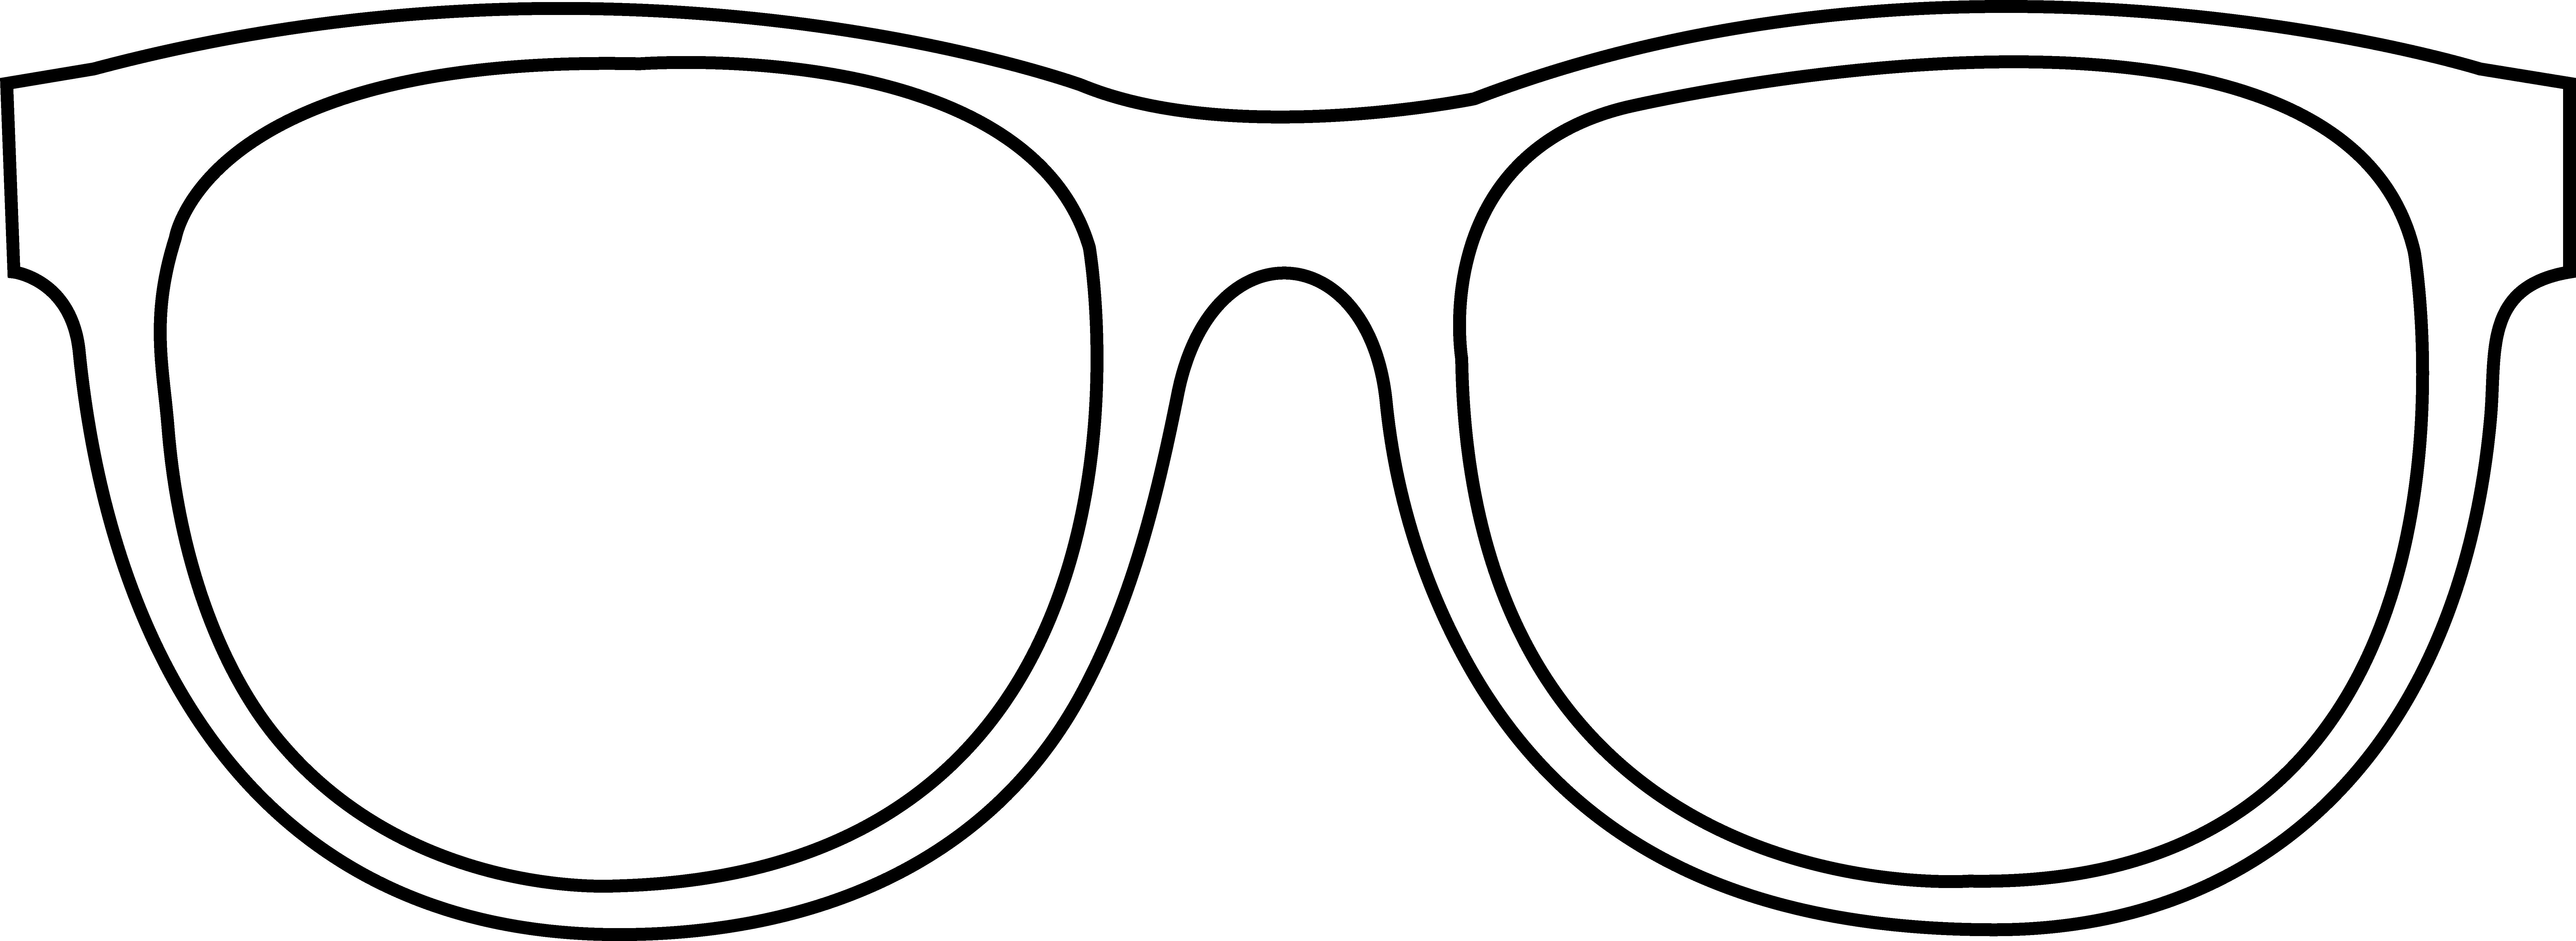 Sunglasses Clipart - Cliparts.co